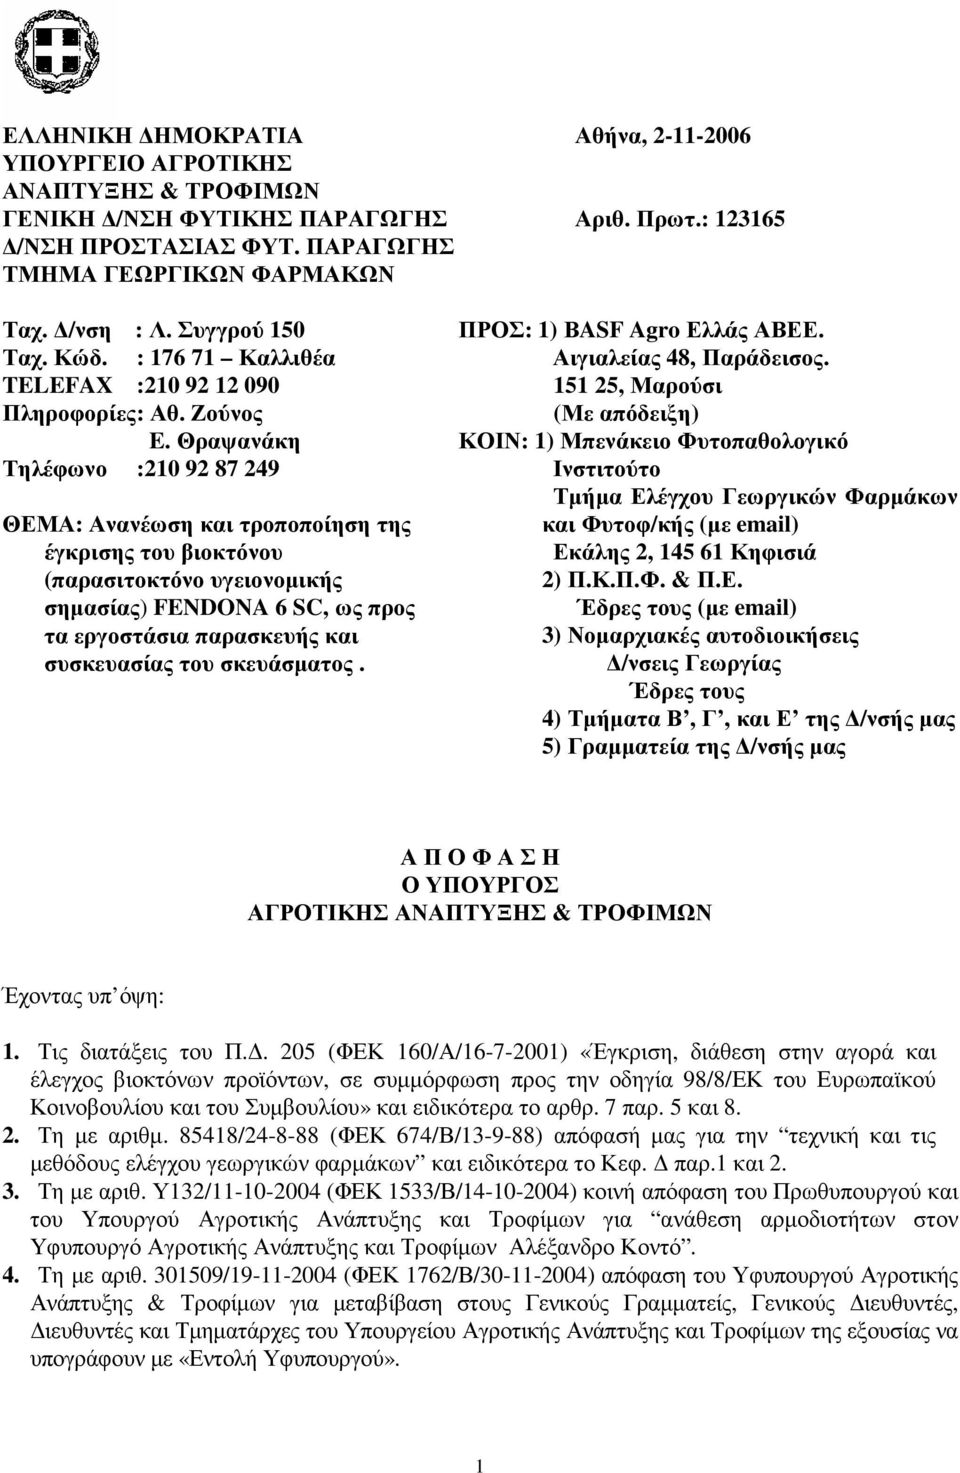 Θραψανάκη Τηλέφωνο :210 92 87 249 ΘΕΜΑ: Ανανέωση και τροποποίηση της έγκρισης του βιοκτόνου (παρασιτοκτόνο υγειονοµικής σηµασίας) FENDONA 6 SC, ως προς τα εργοστάσια παρασκευής και συσκευασίας του